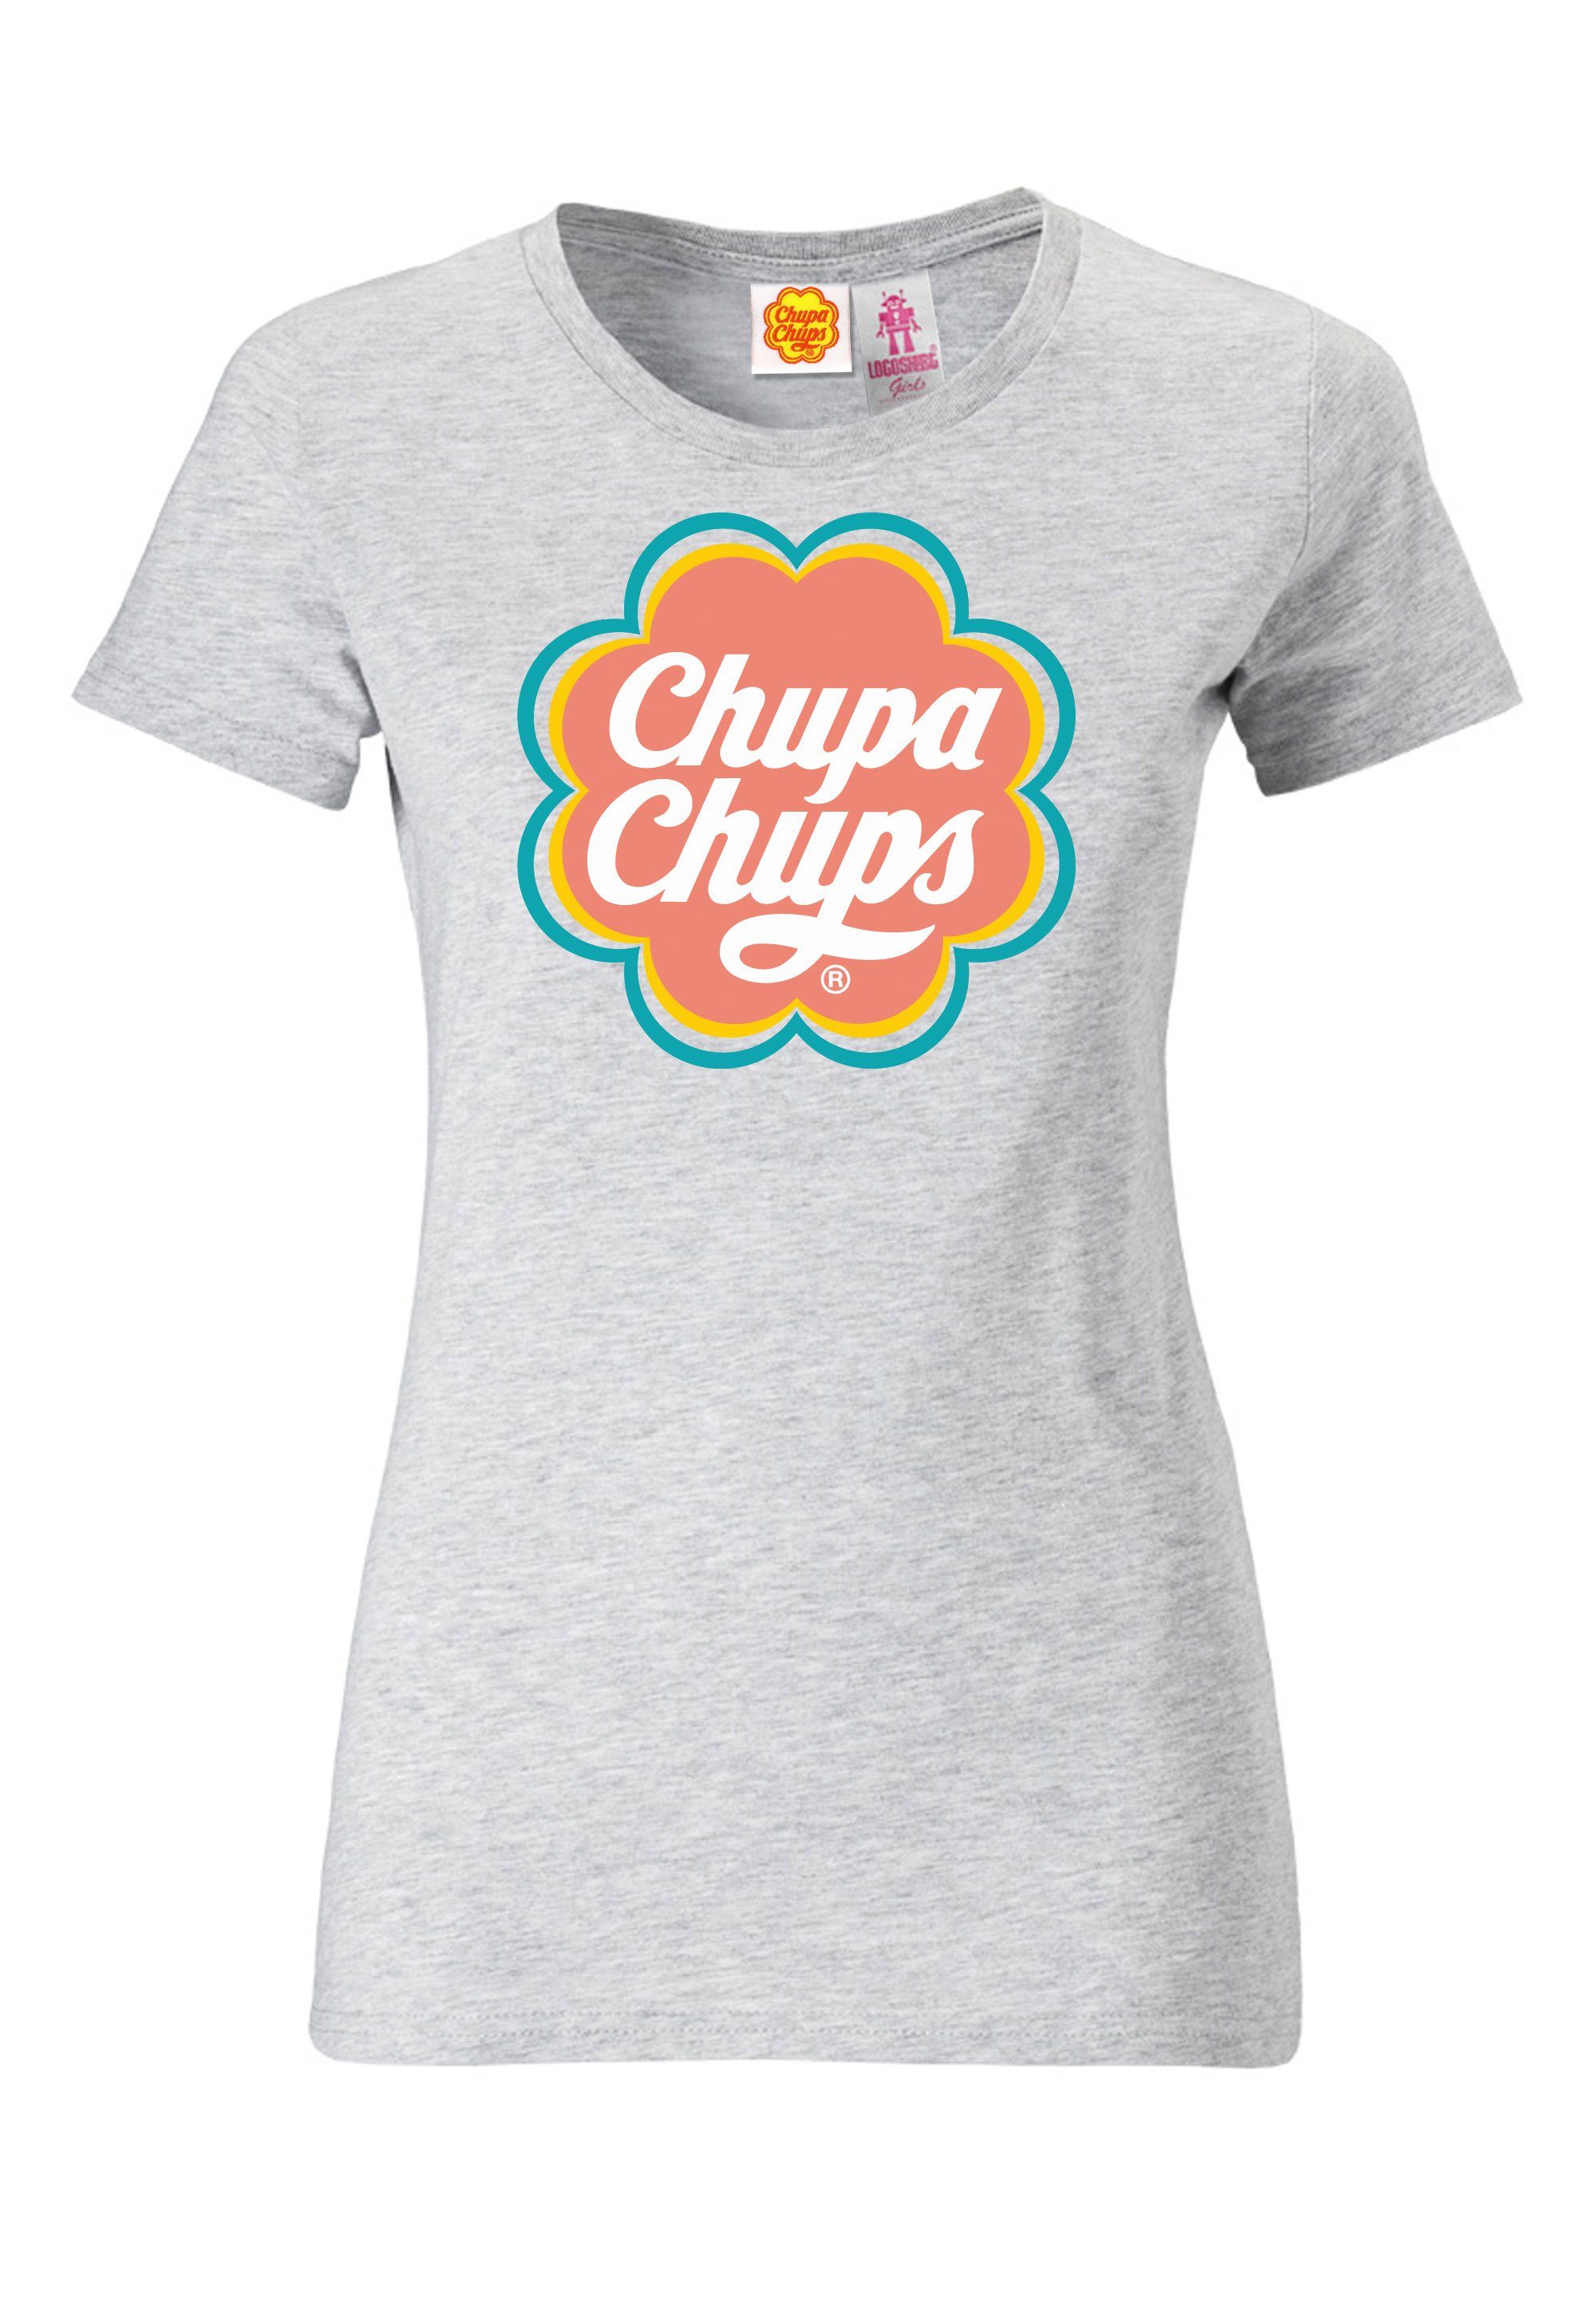 lizenzierten Chups Chupa mit Design T-Shirt LOGOSHIRT